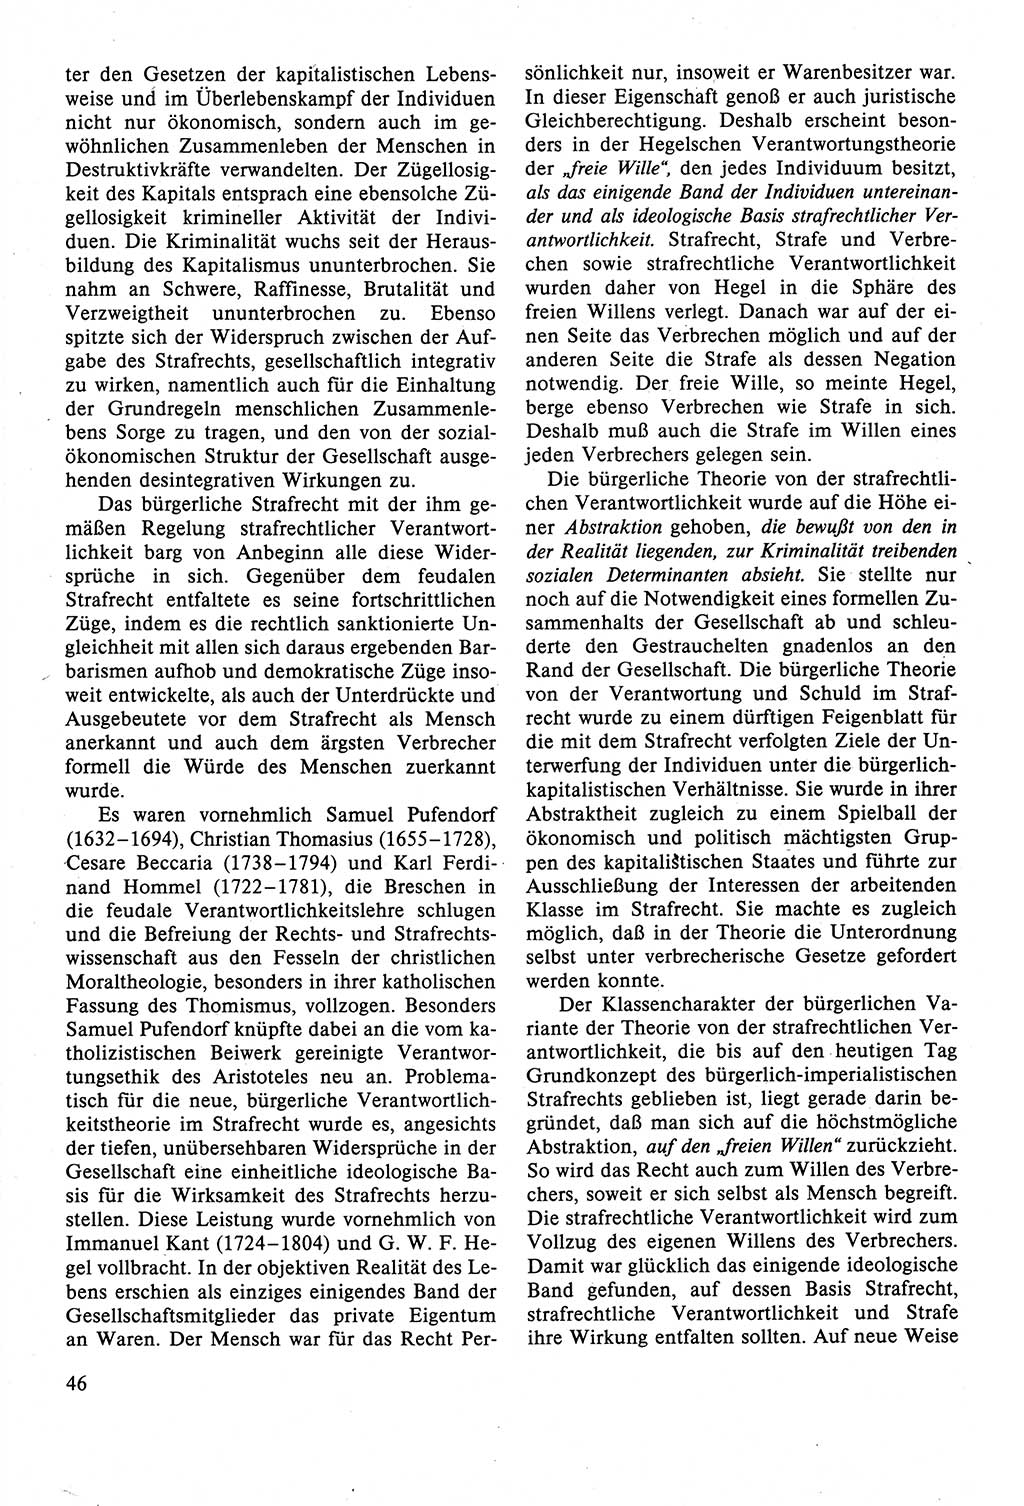 Strafrecht der DDR (Deutsche Demokratische Republik), Lehrbuch 1988, Seite 46 (Strafr. DDR Lb. 1988, S. 46)